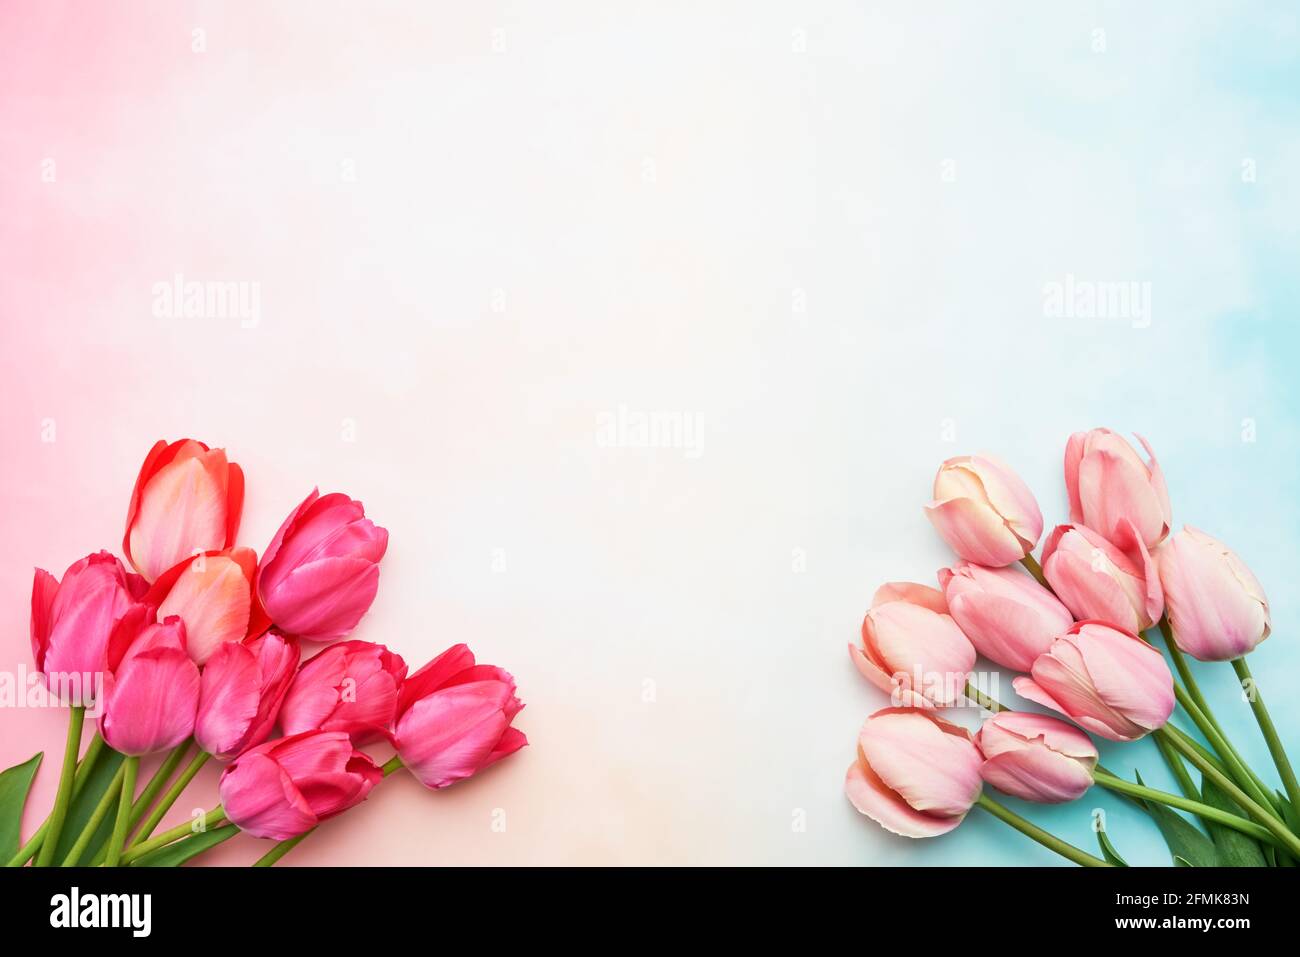 Zwei Blumensträuße aus rosa Tulpen auf einem rosa pastellfarbenen Hintergrund, selektiver Fokus. Muttertag, Geburtstagsfeier Konzept. Flach liegend, Platz für Text kopieren Stockfoto